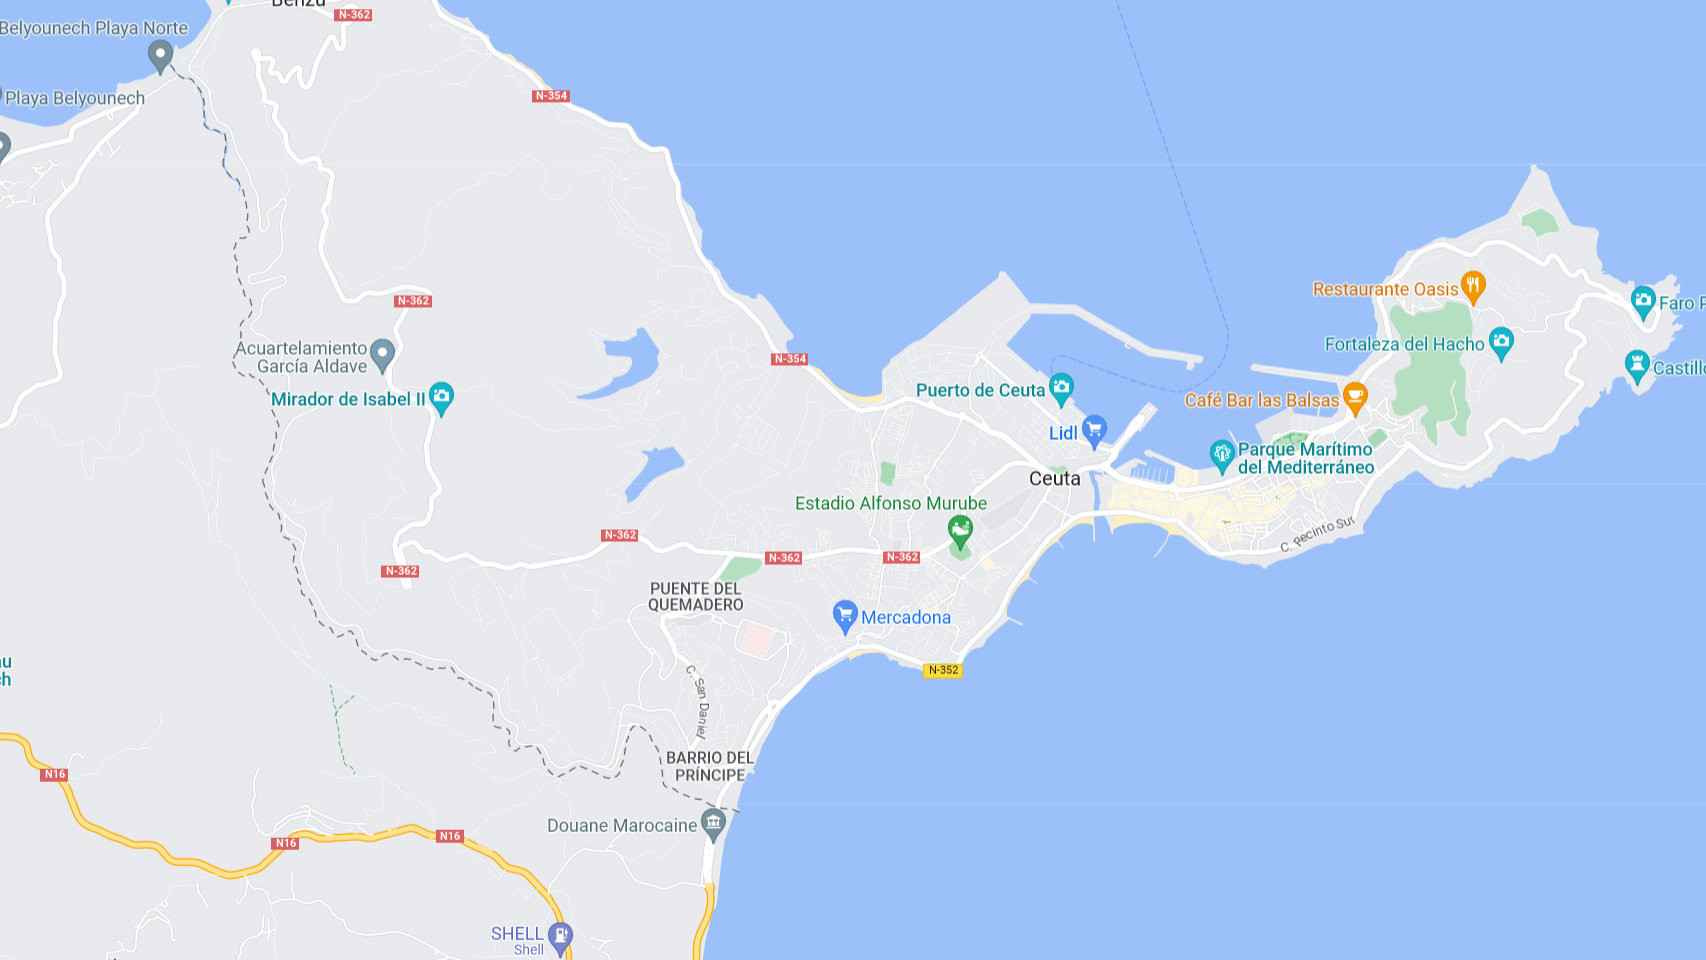 Frontera entre Ceuta y Marruecos según Google Maps